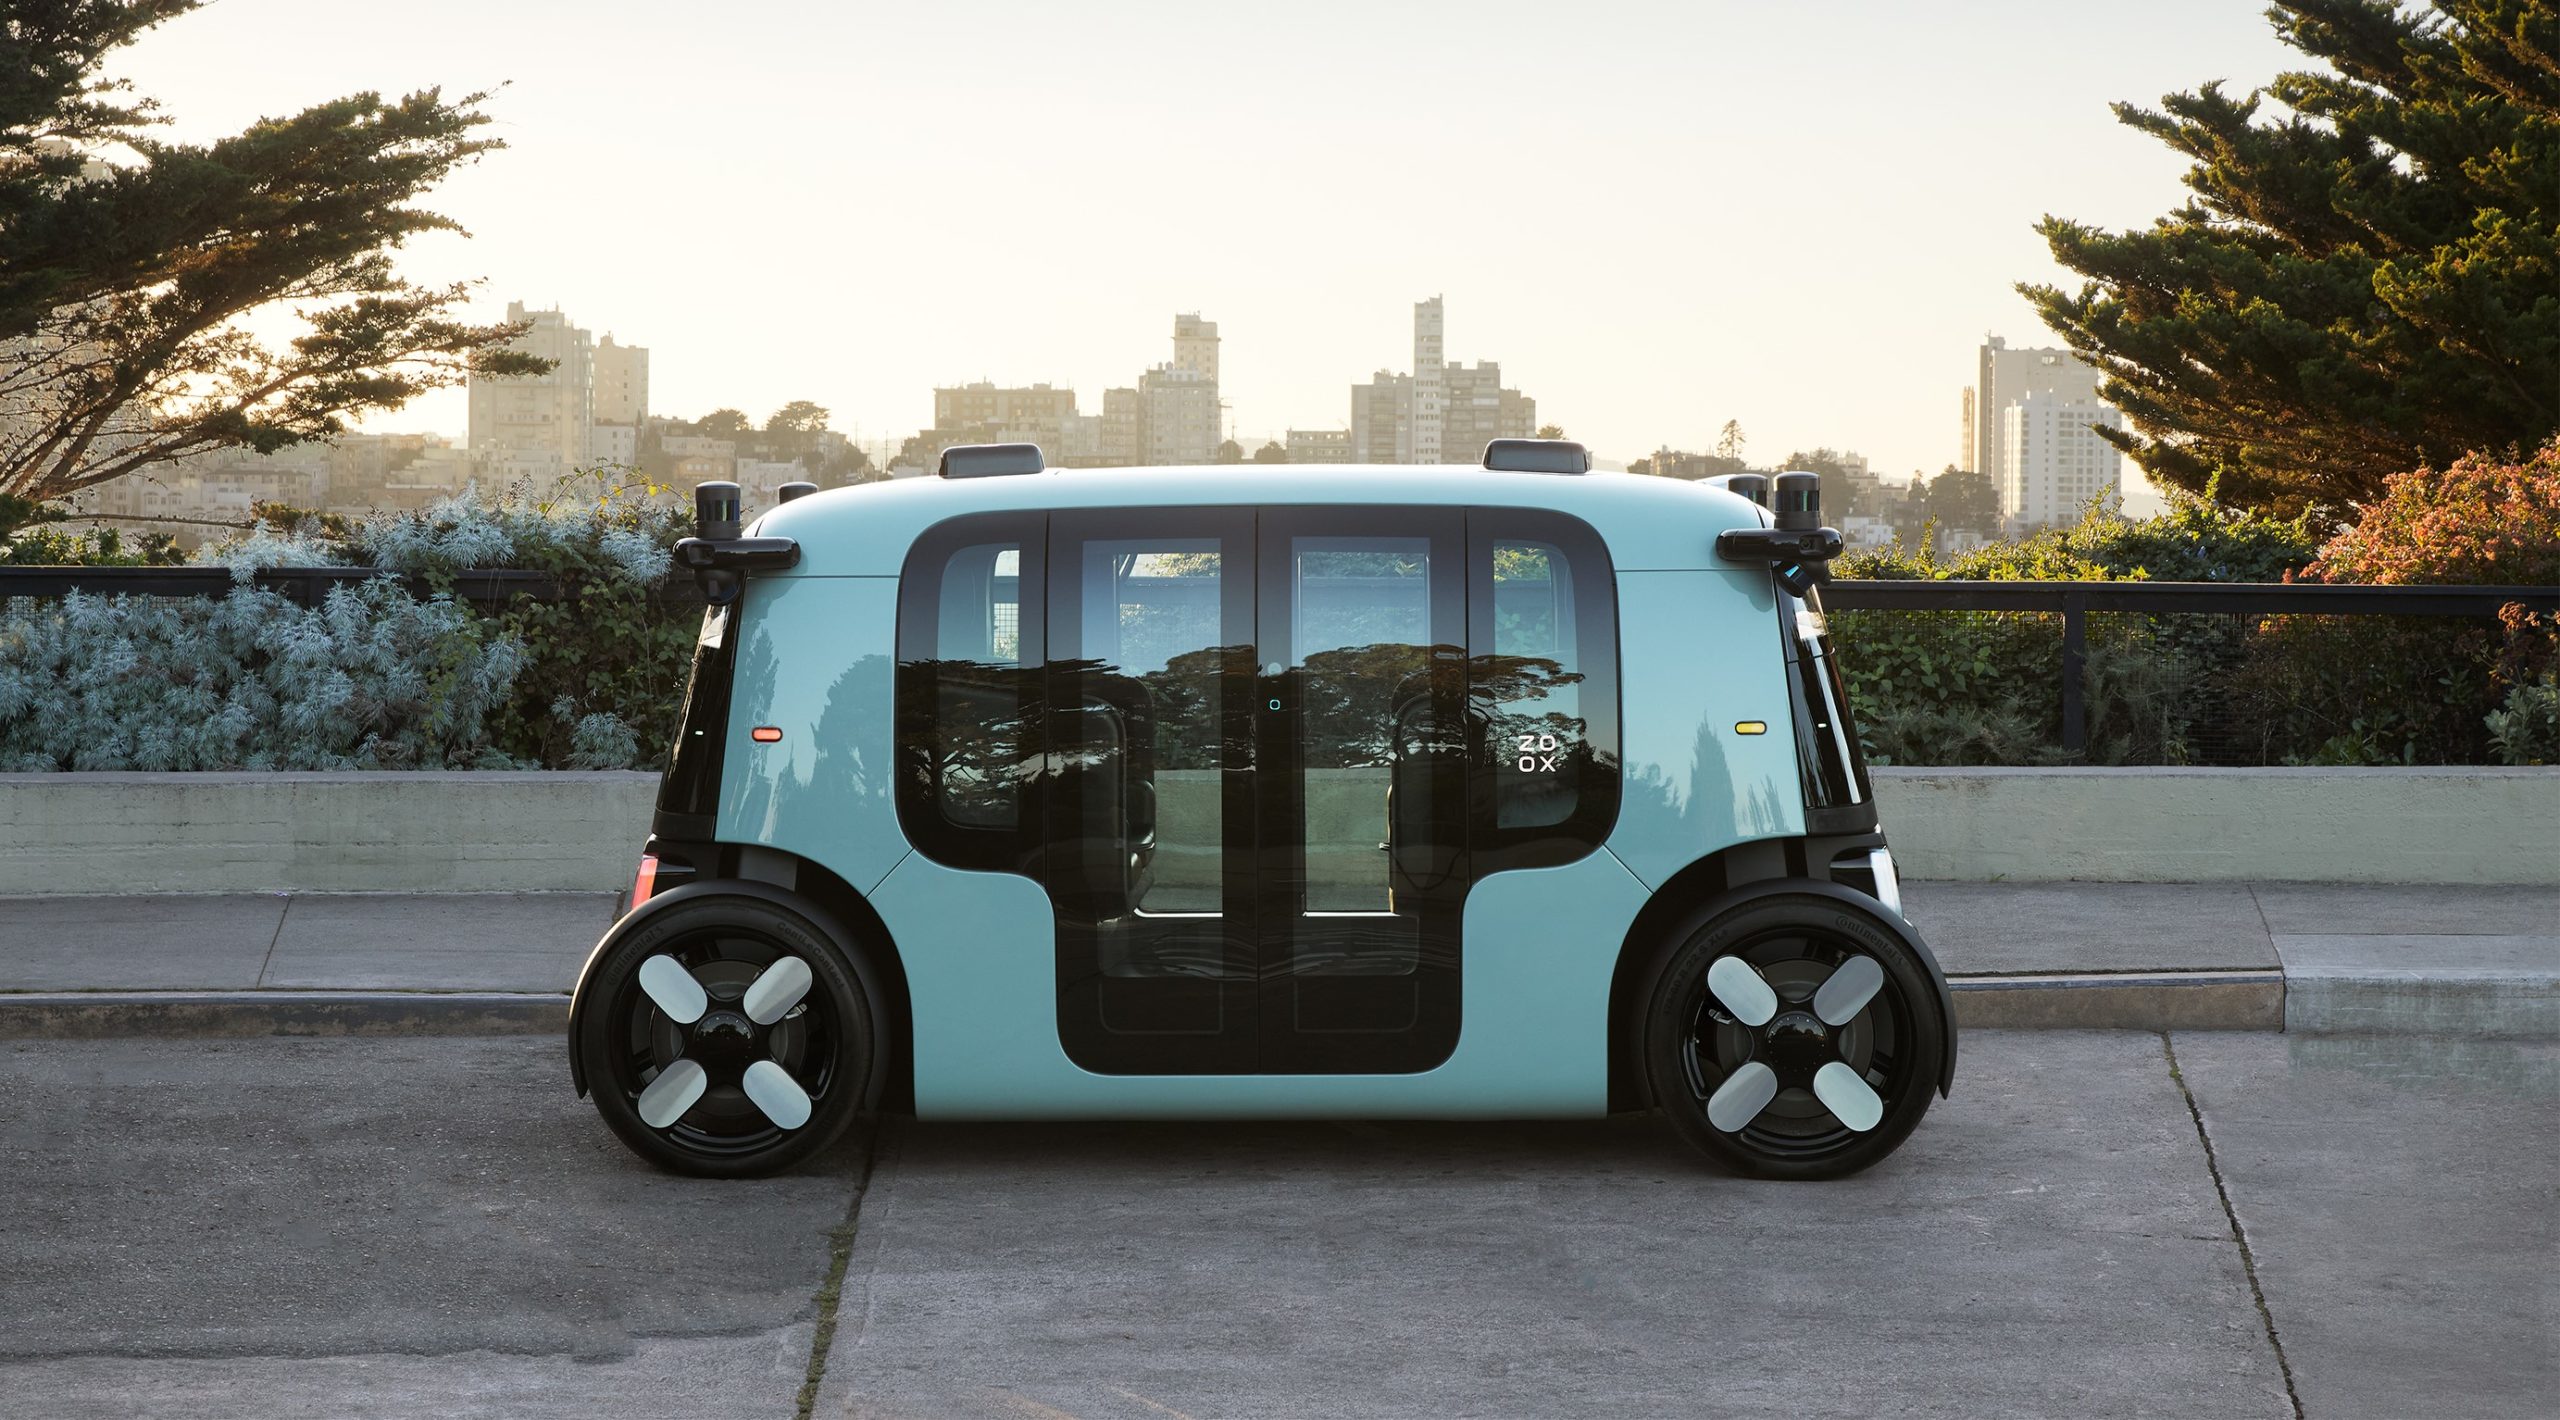 Budú robotické taxíky čoskoro bežnou súčasťou nášho života?